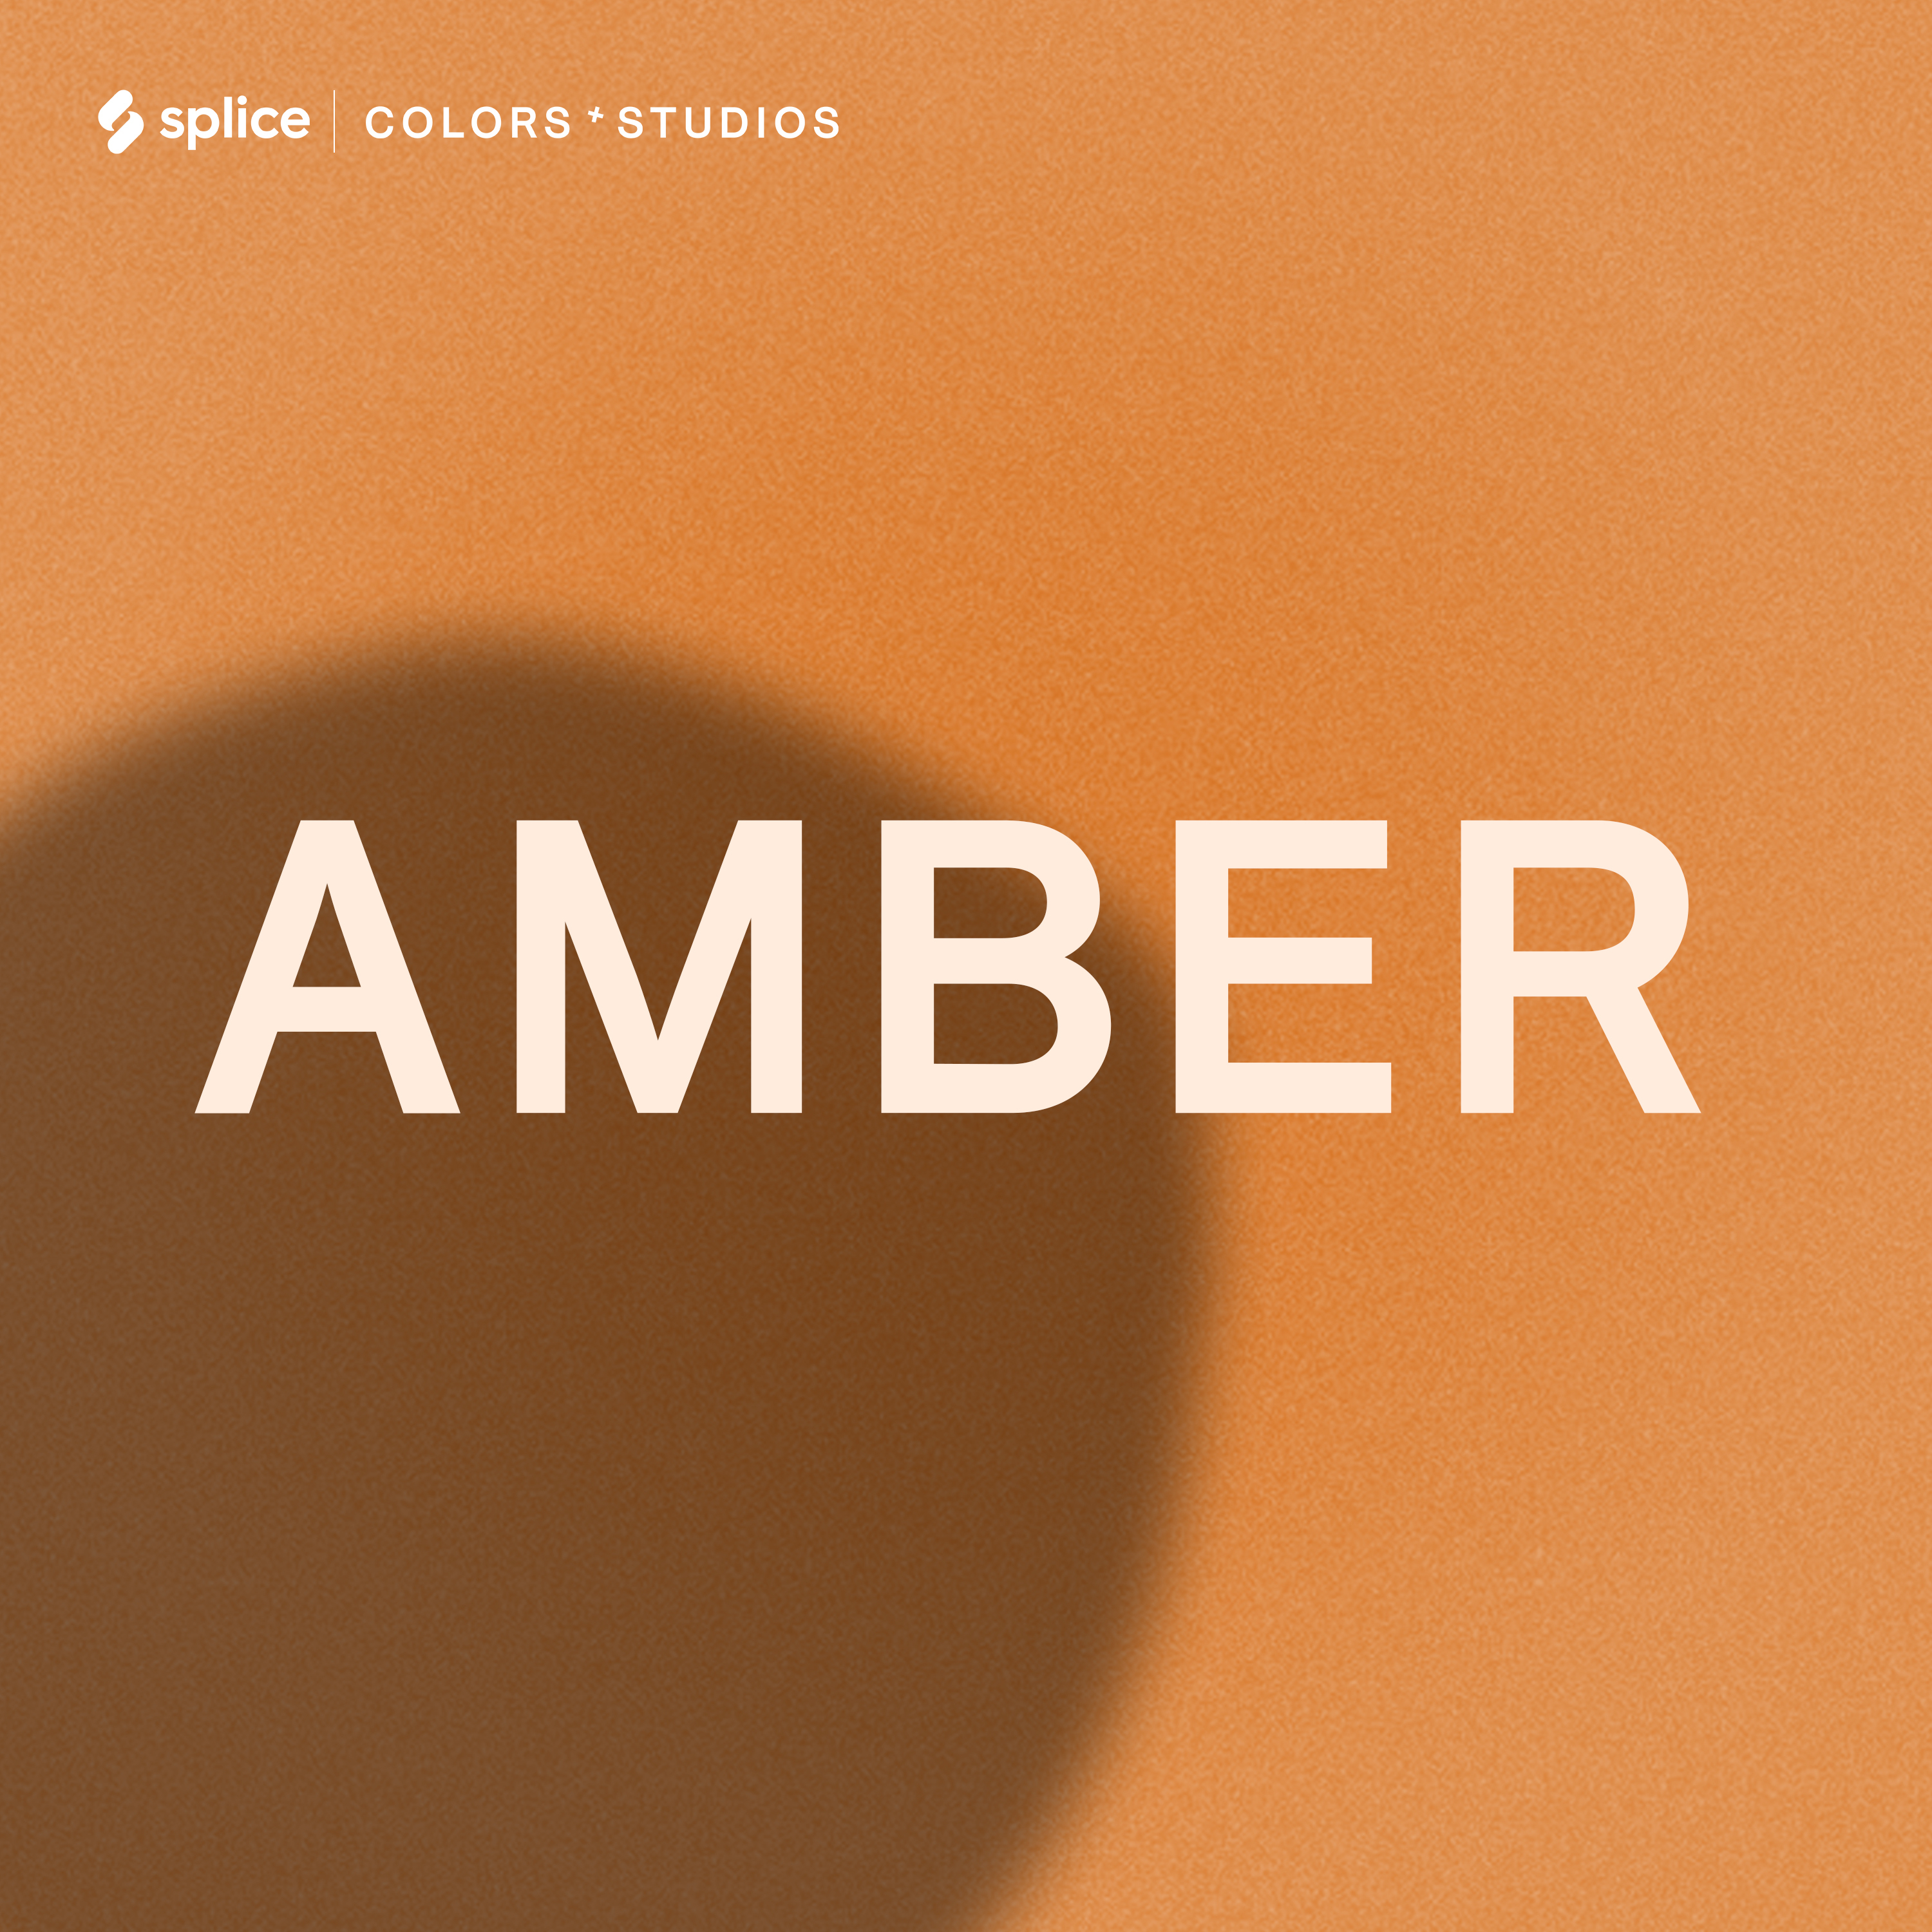 COLORS Presents: AMBER